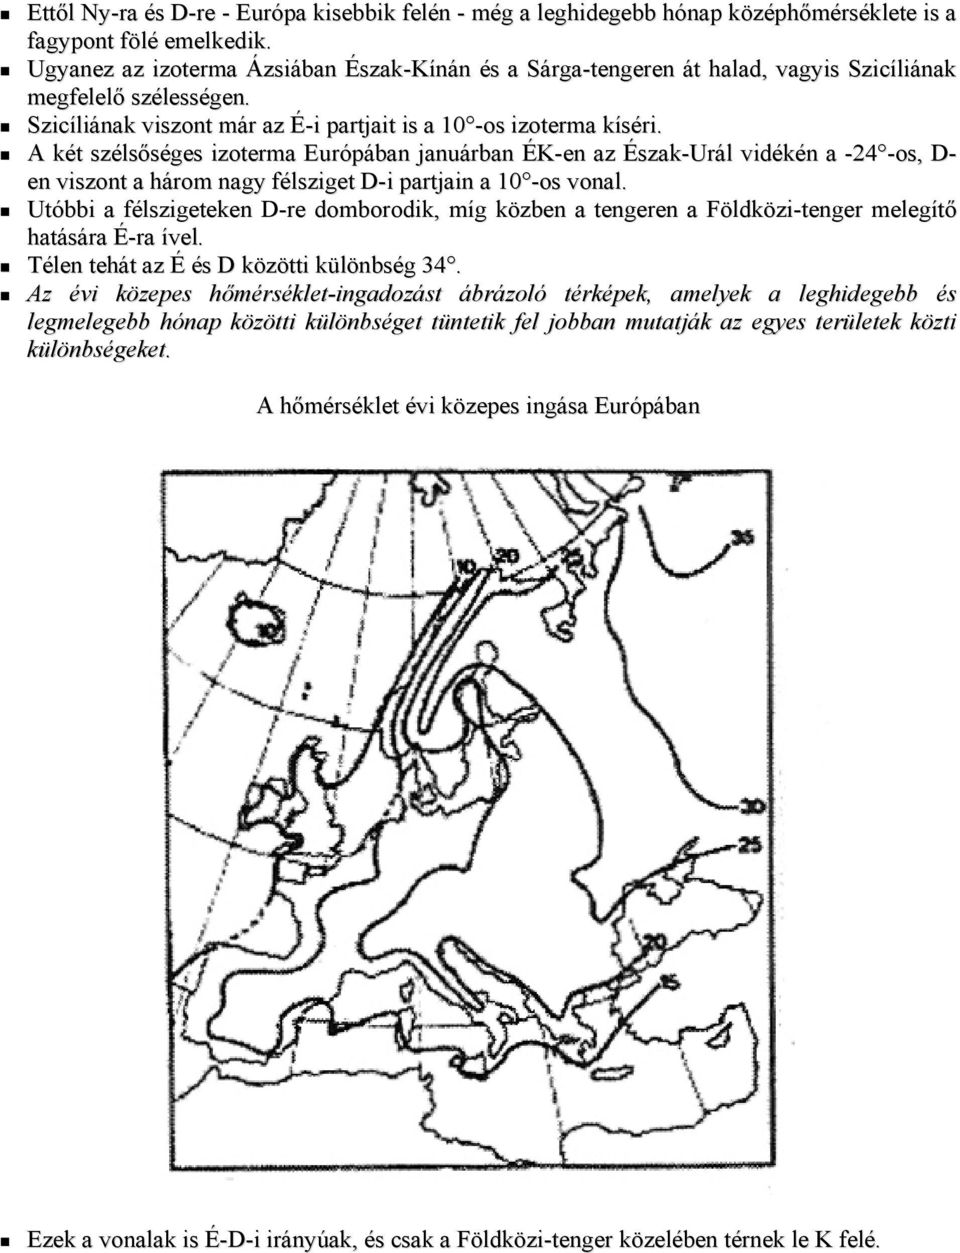 A két szélsőséges izoterma Európában januárban ÉK-en az Észak-Urál vidékén a -24 -os, D- en viszont a három nagy félsziget D-i partjain a 10 -os vonal.